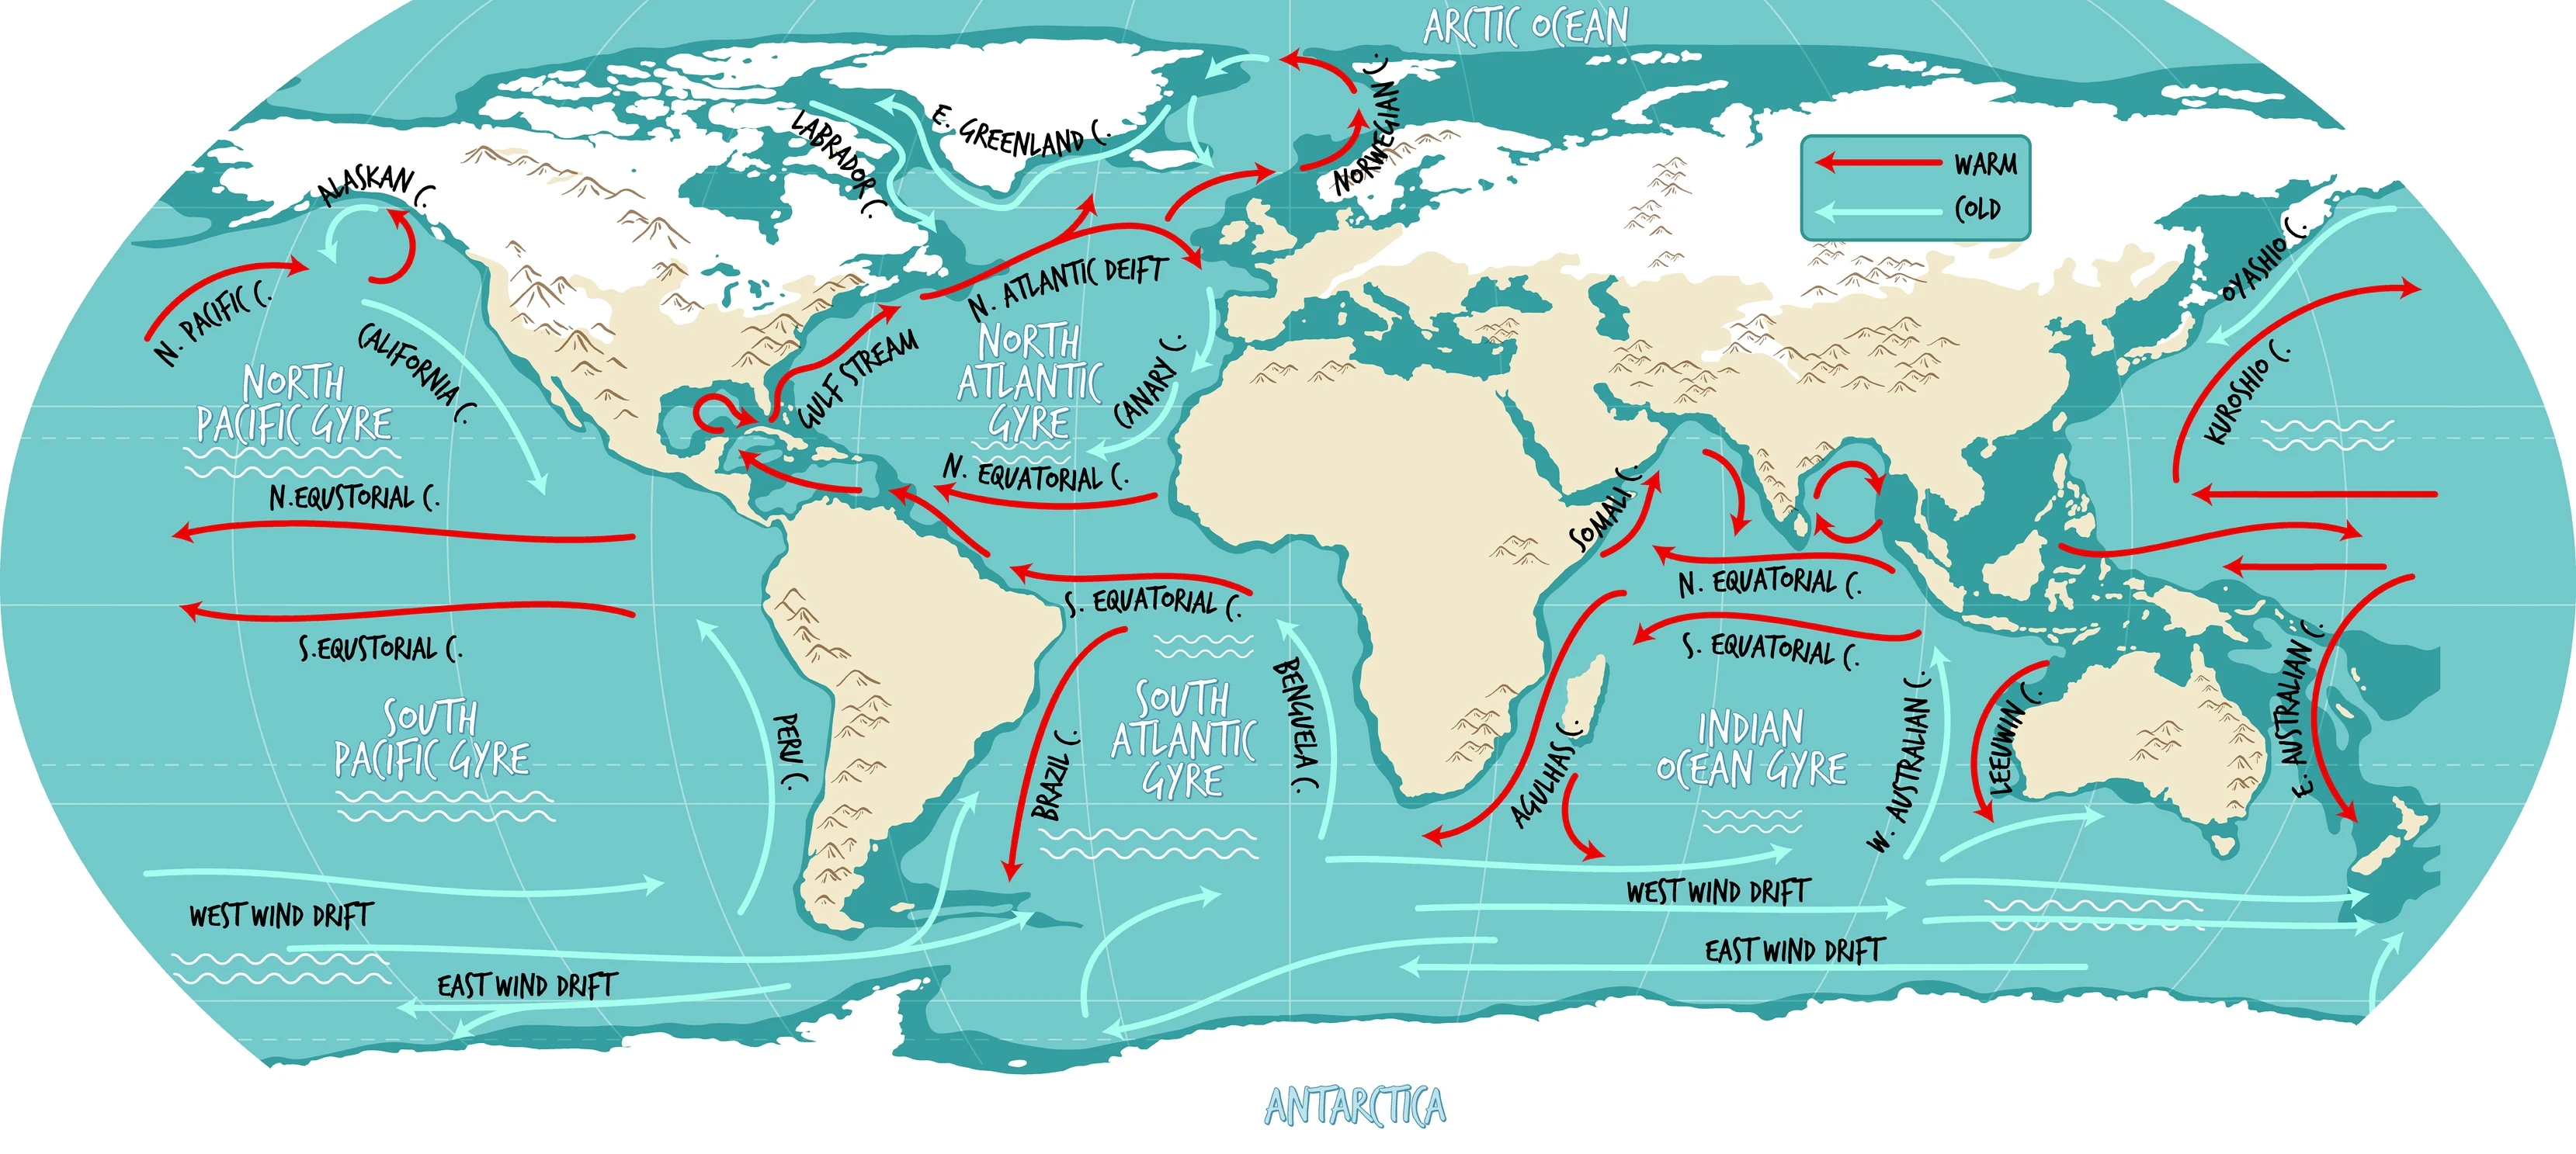 Ілюстративна карта світу океанських течій із назвами.